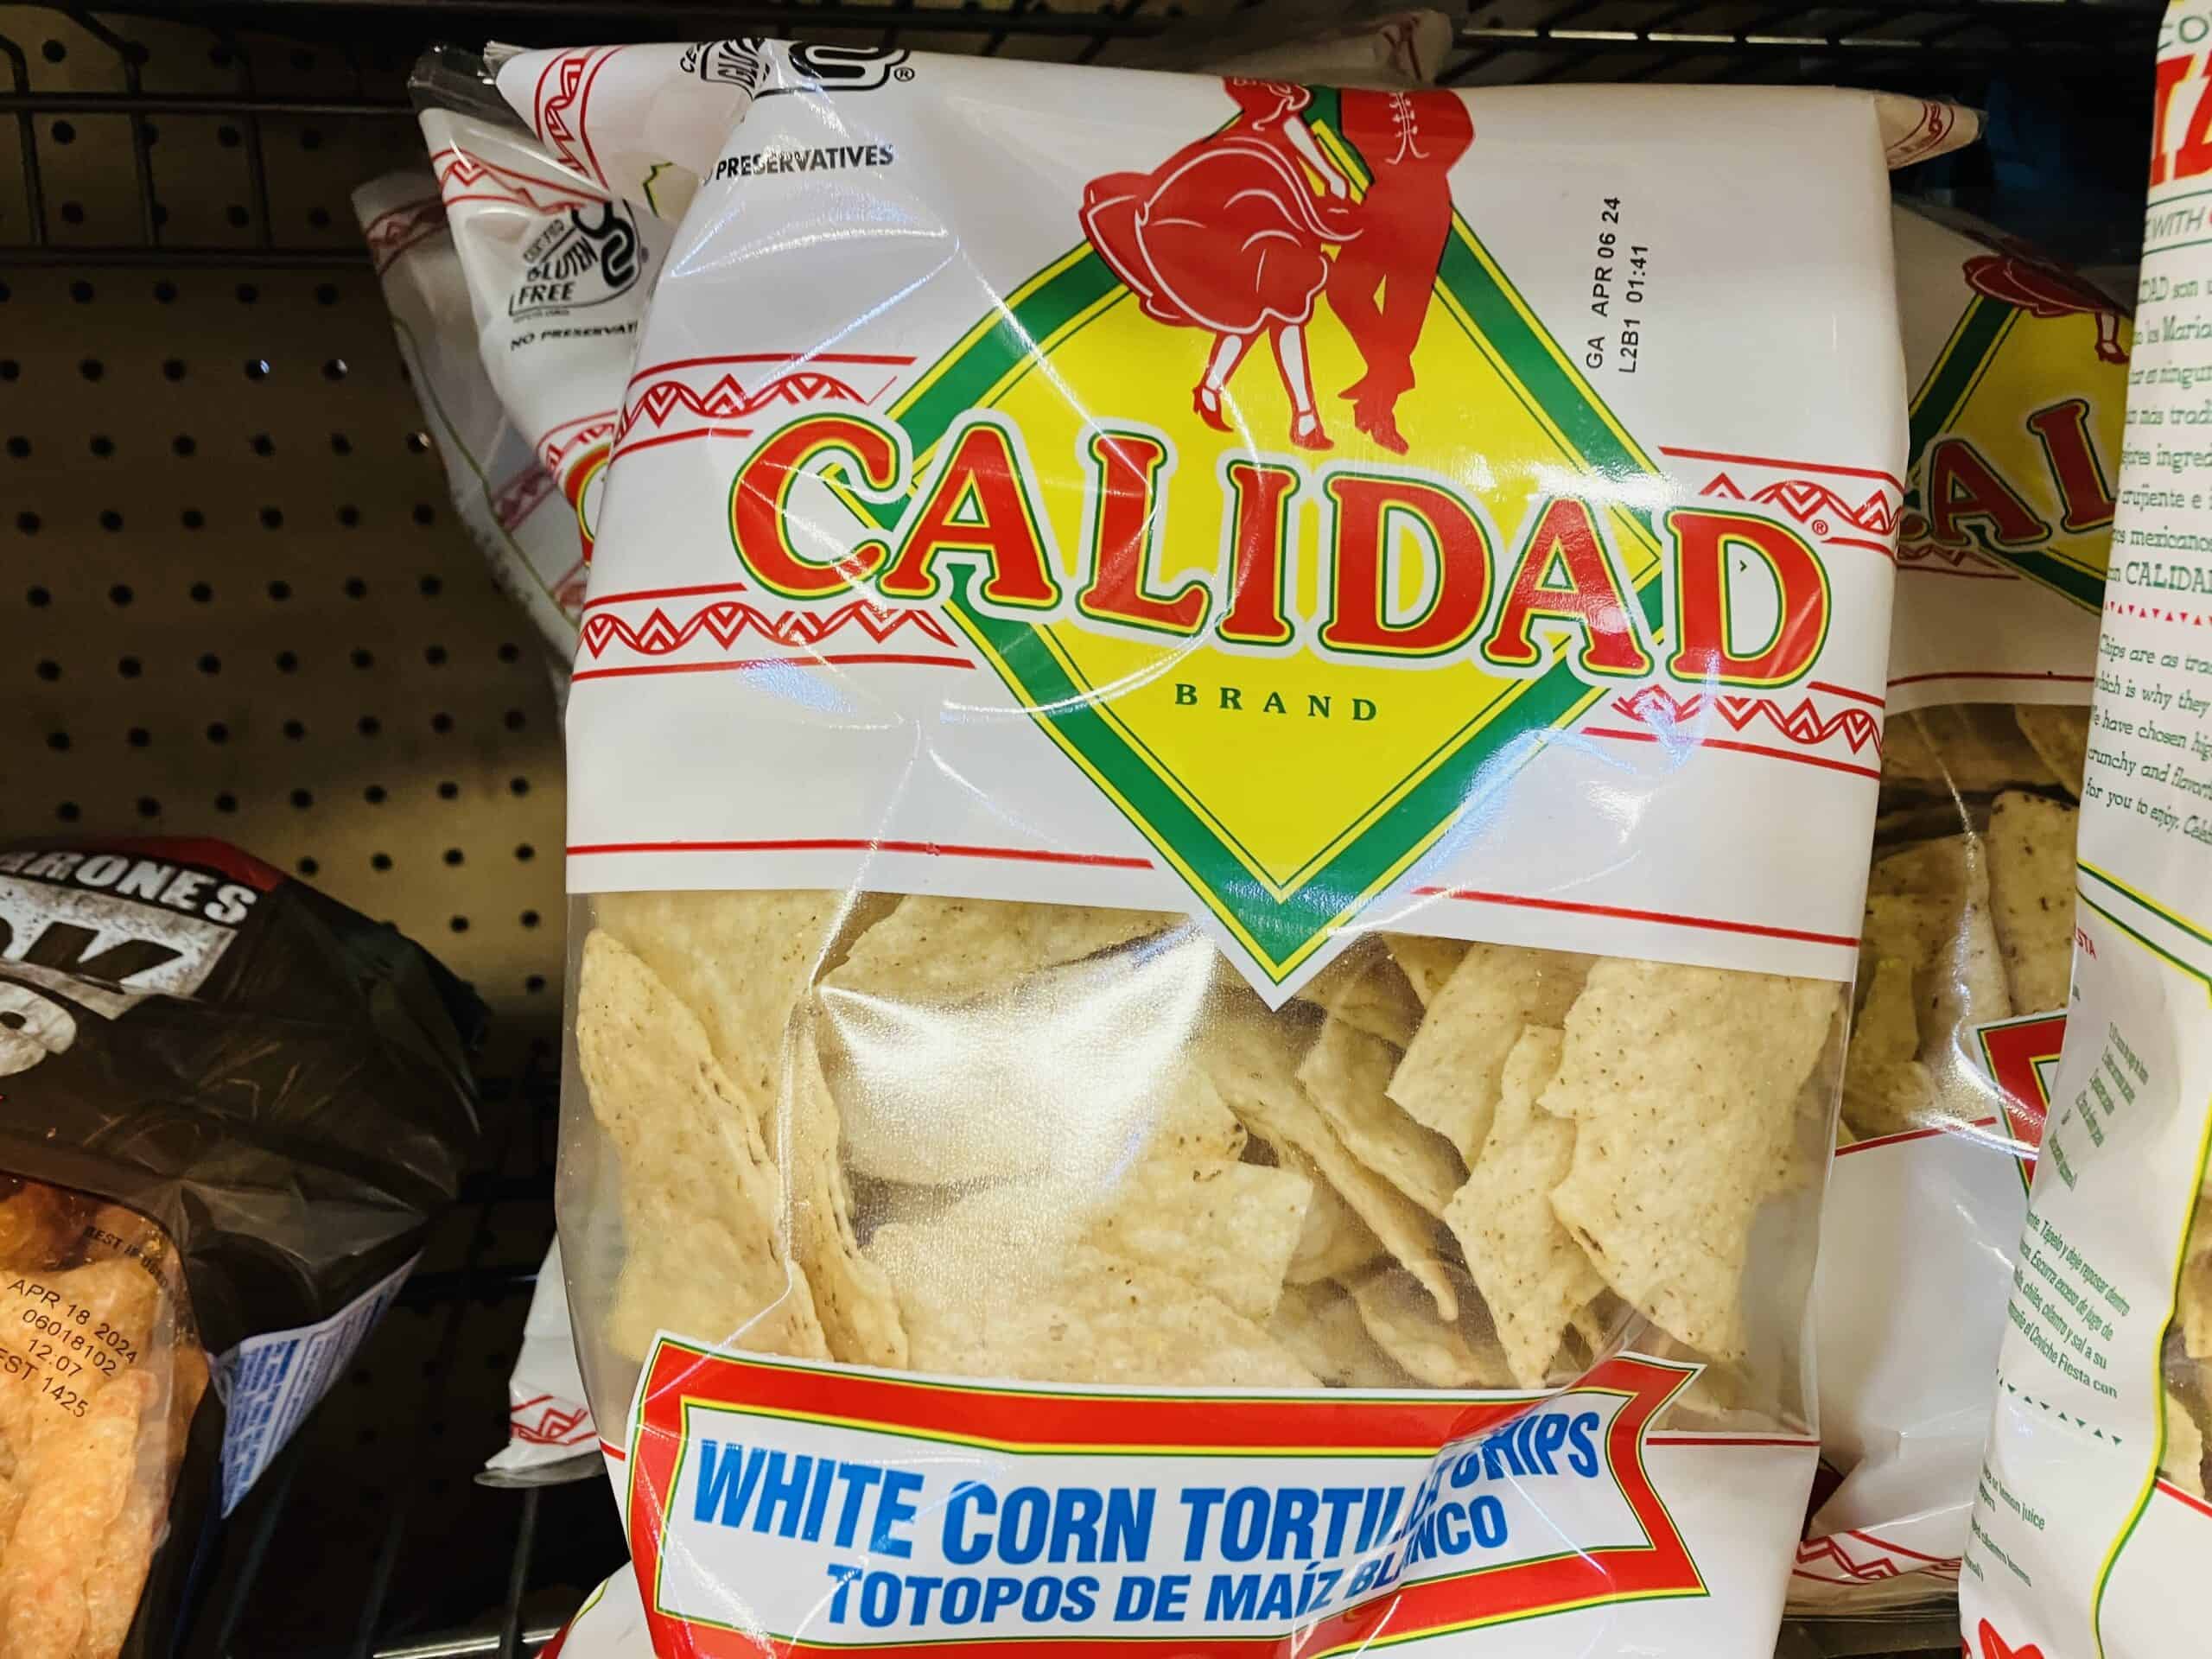 Calidad white corn tortilla chips